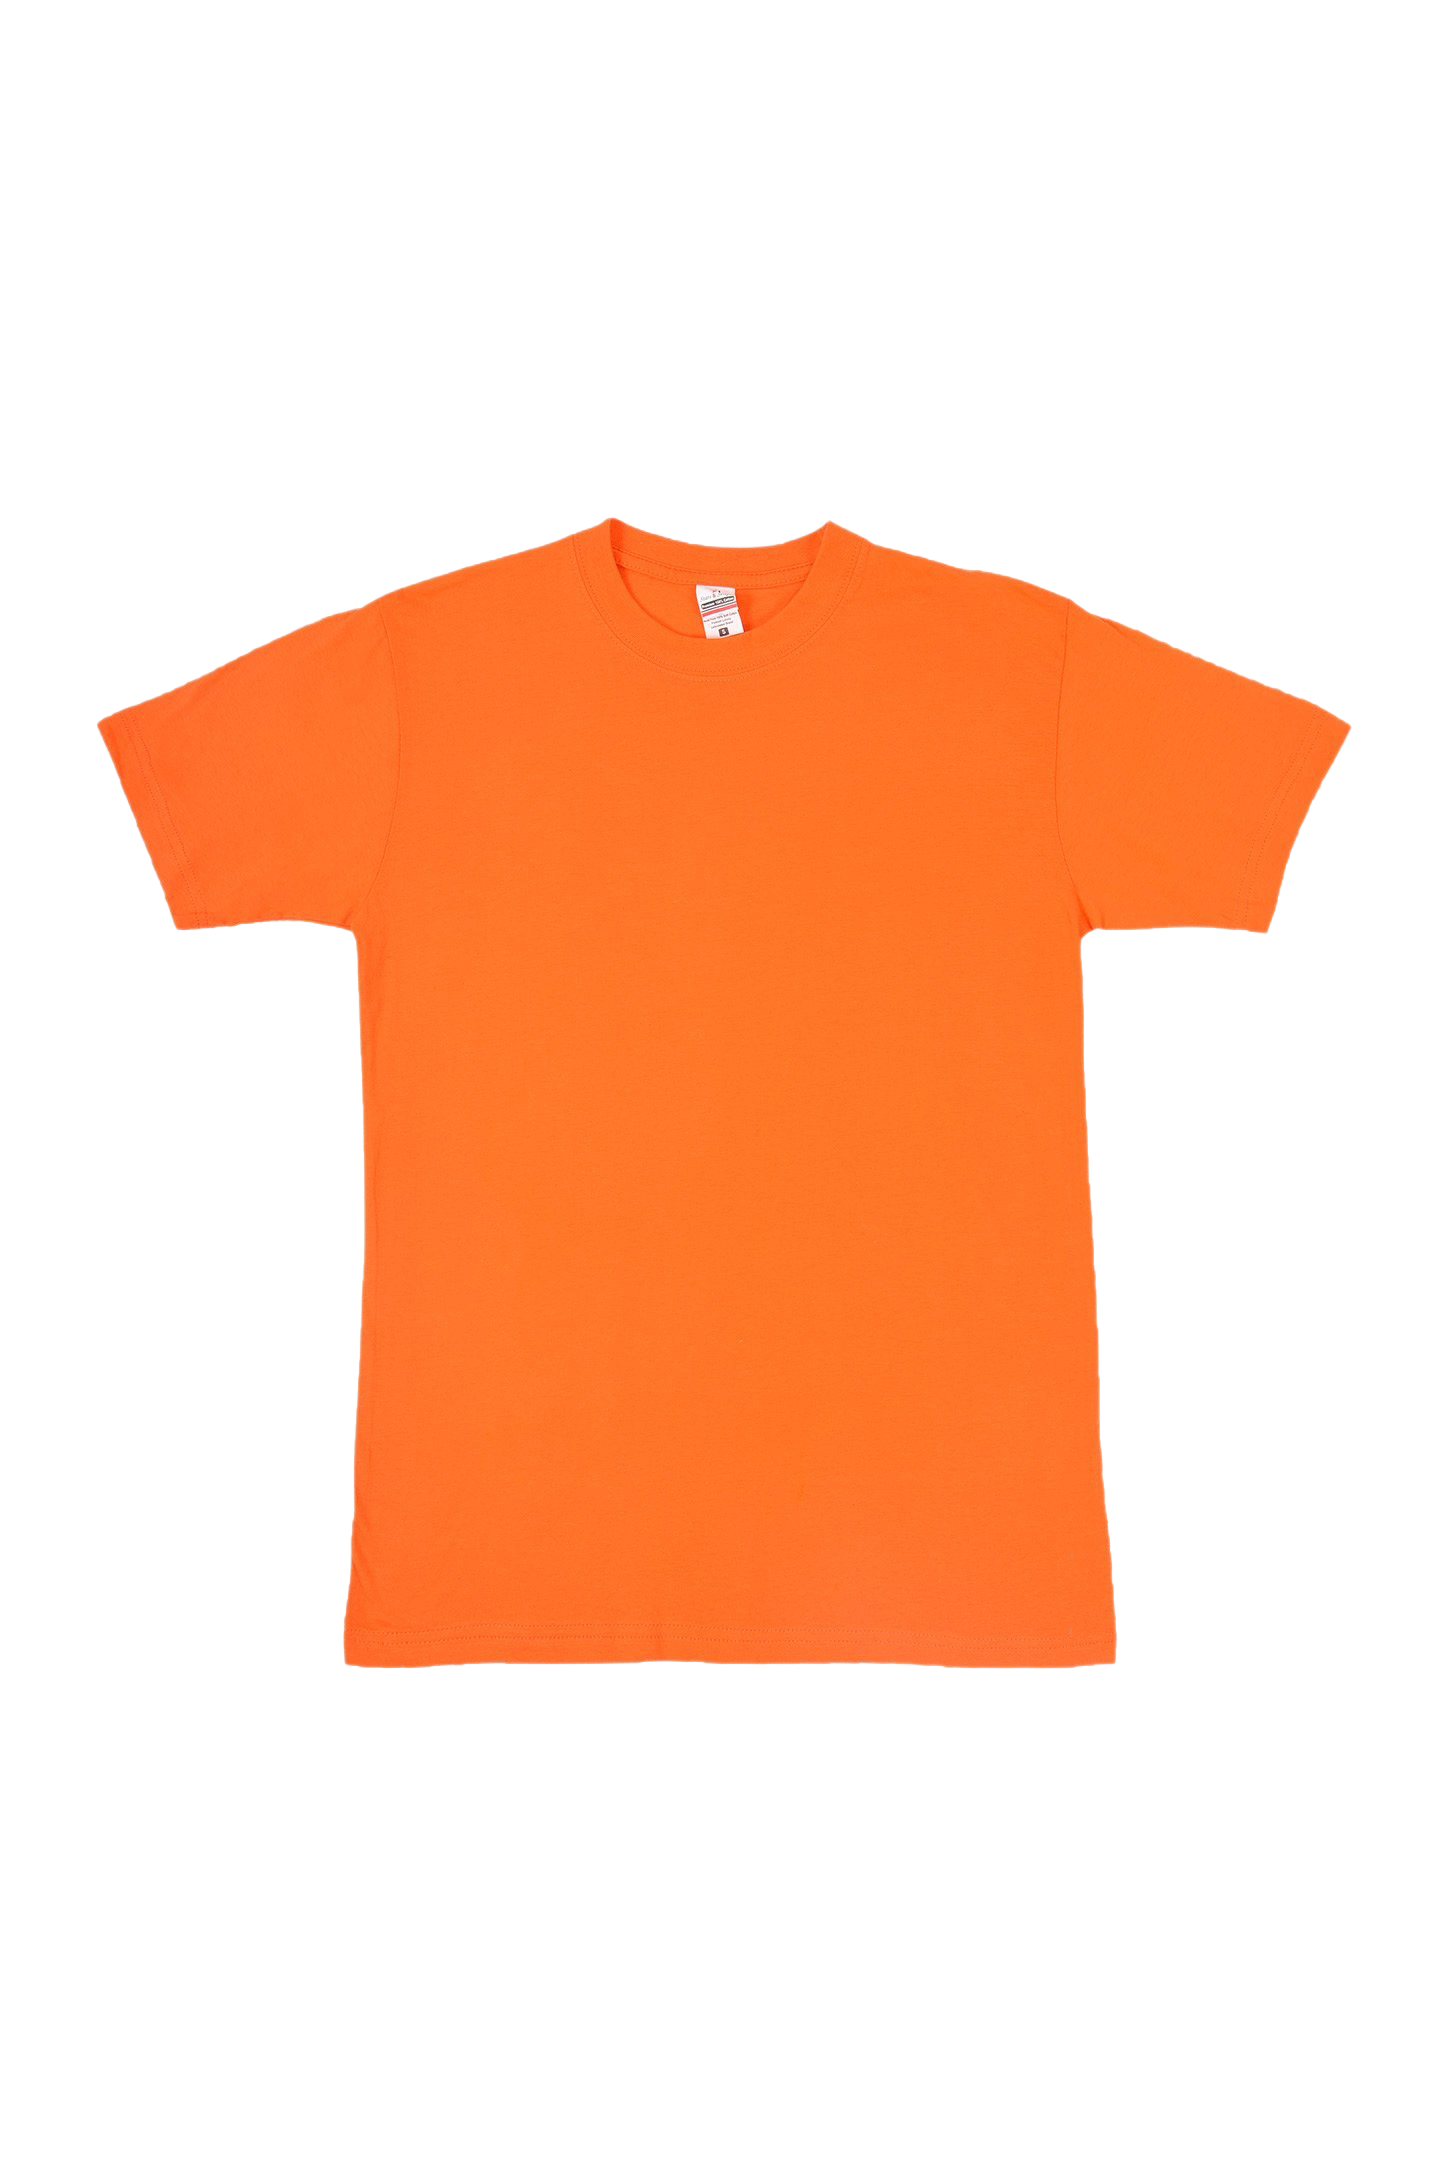 Обычная оранжевая футболка PNG Image